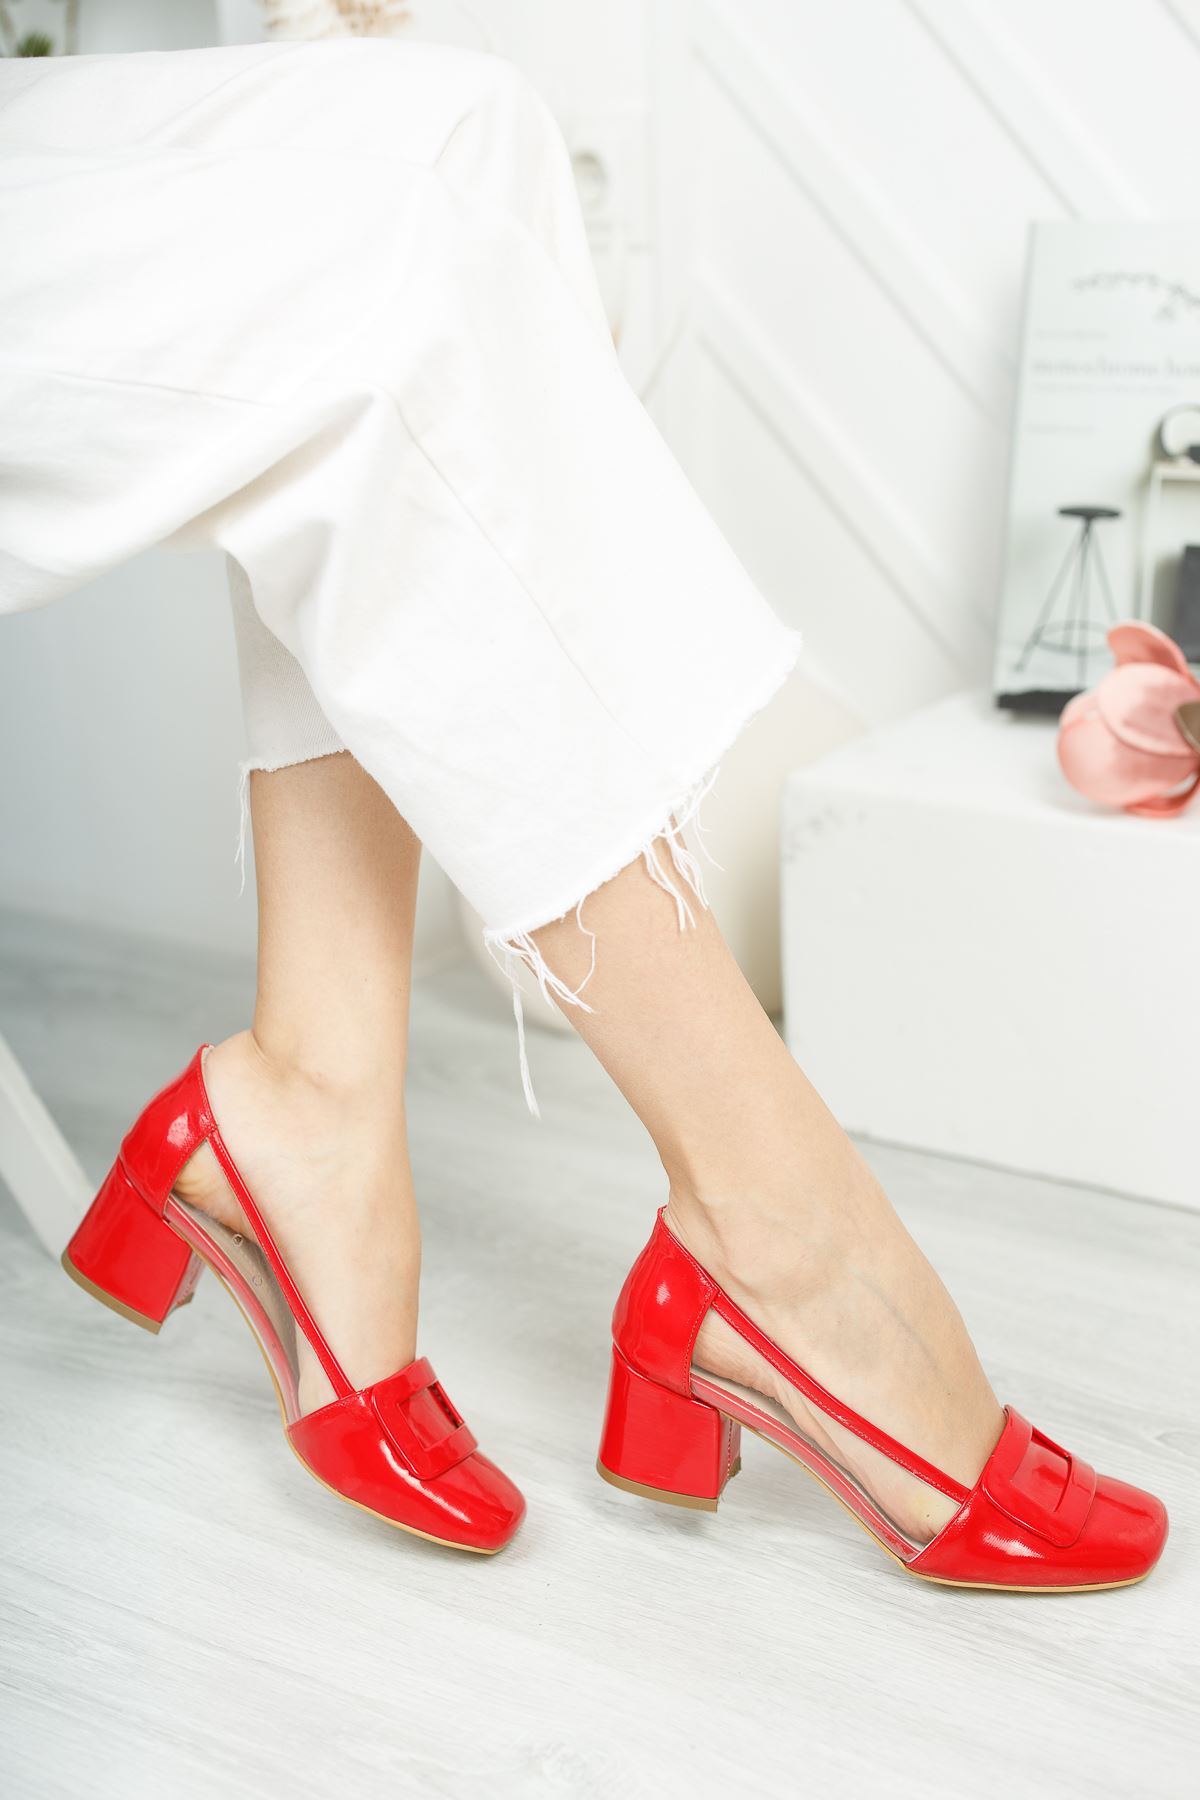 Rindek Lüks Kırmızı Rugan Şeffaf Detay Topuklu Kadın Ayakkabı